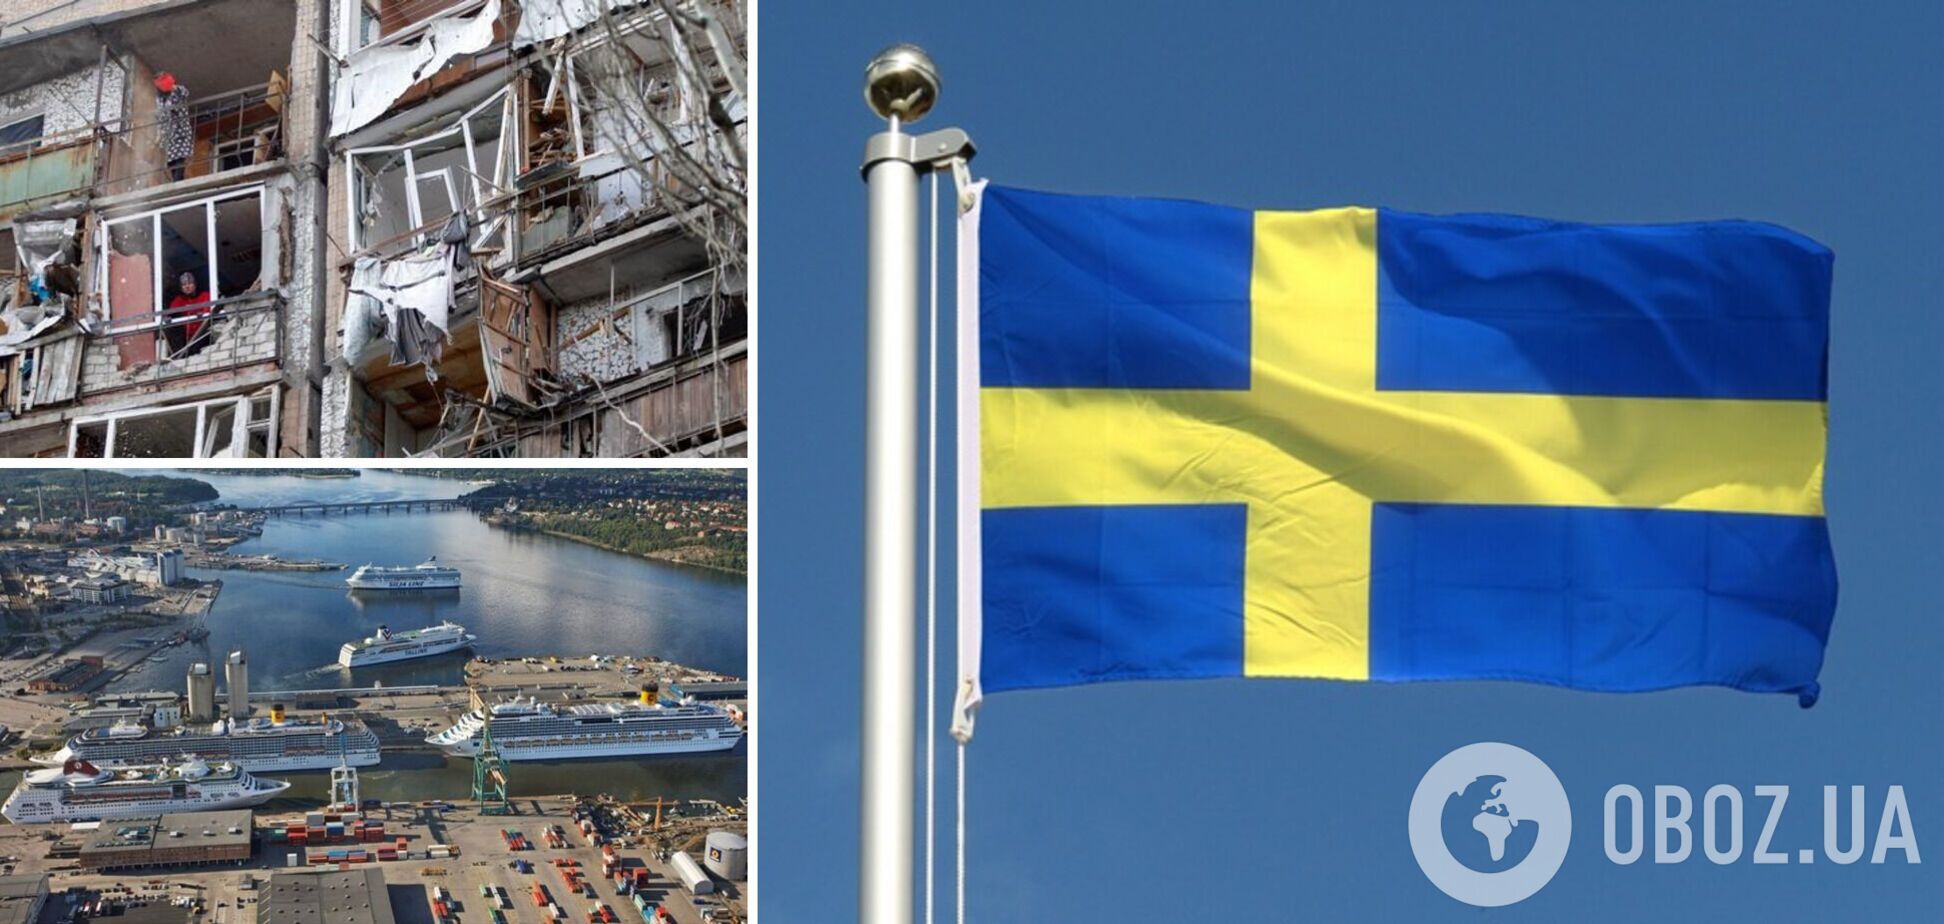 Портовые работники из Швеции объявили блокаду российских судов